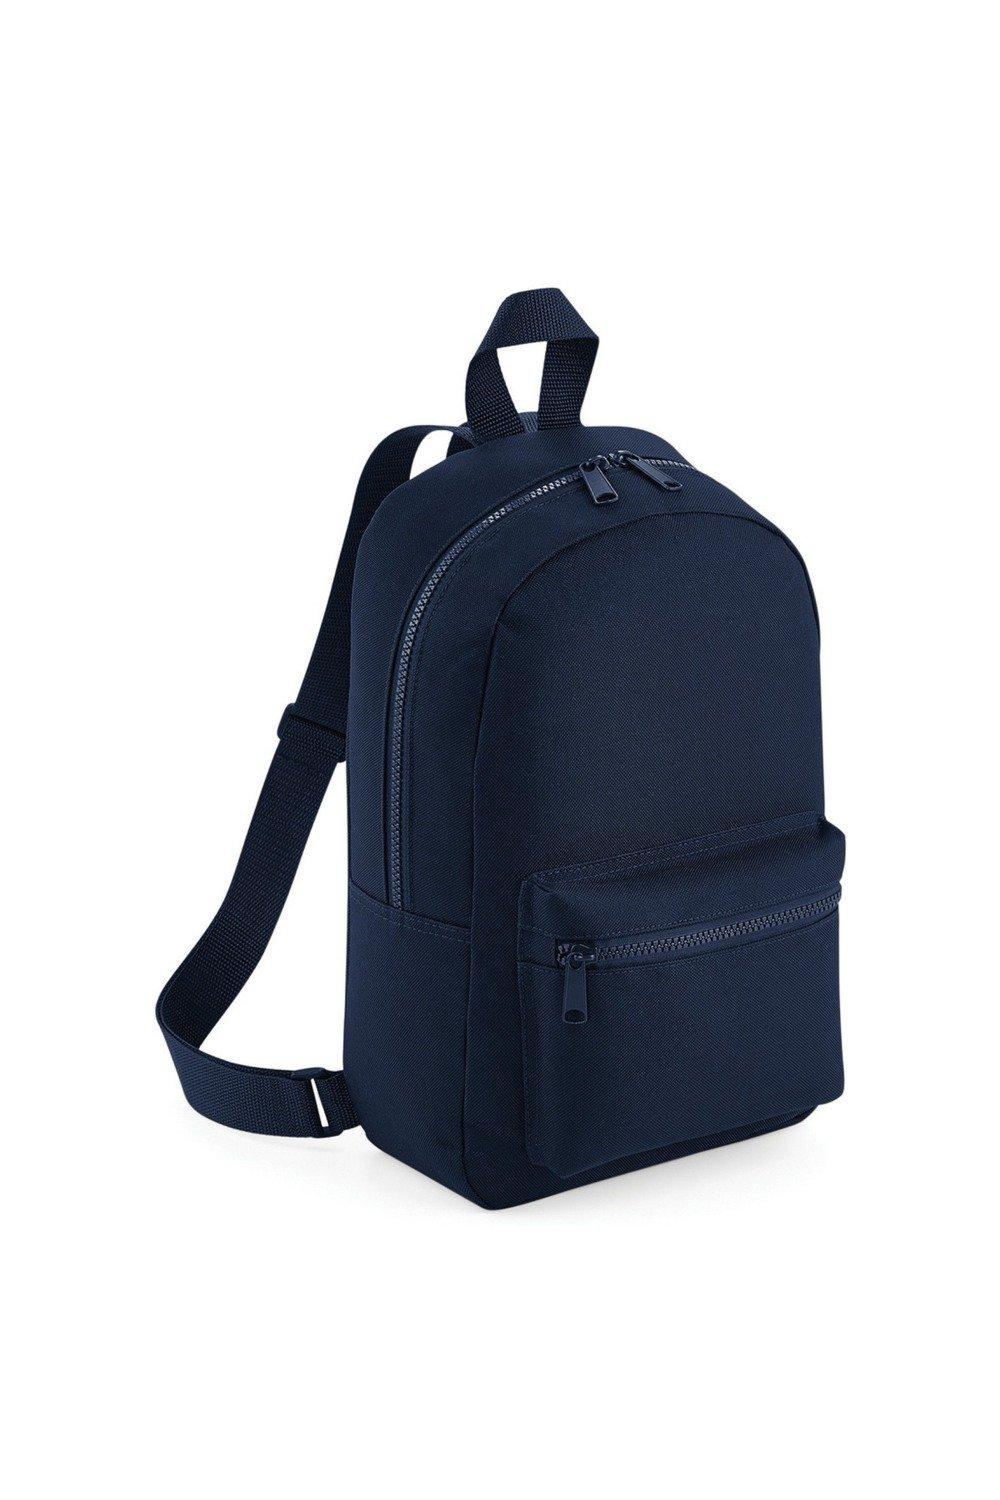 Мини-рюкзак/сумка Essential Essential Bagbase, темно-синий